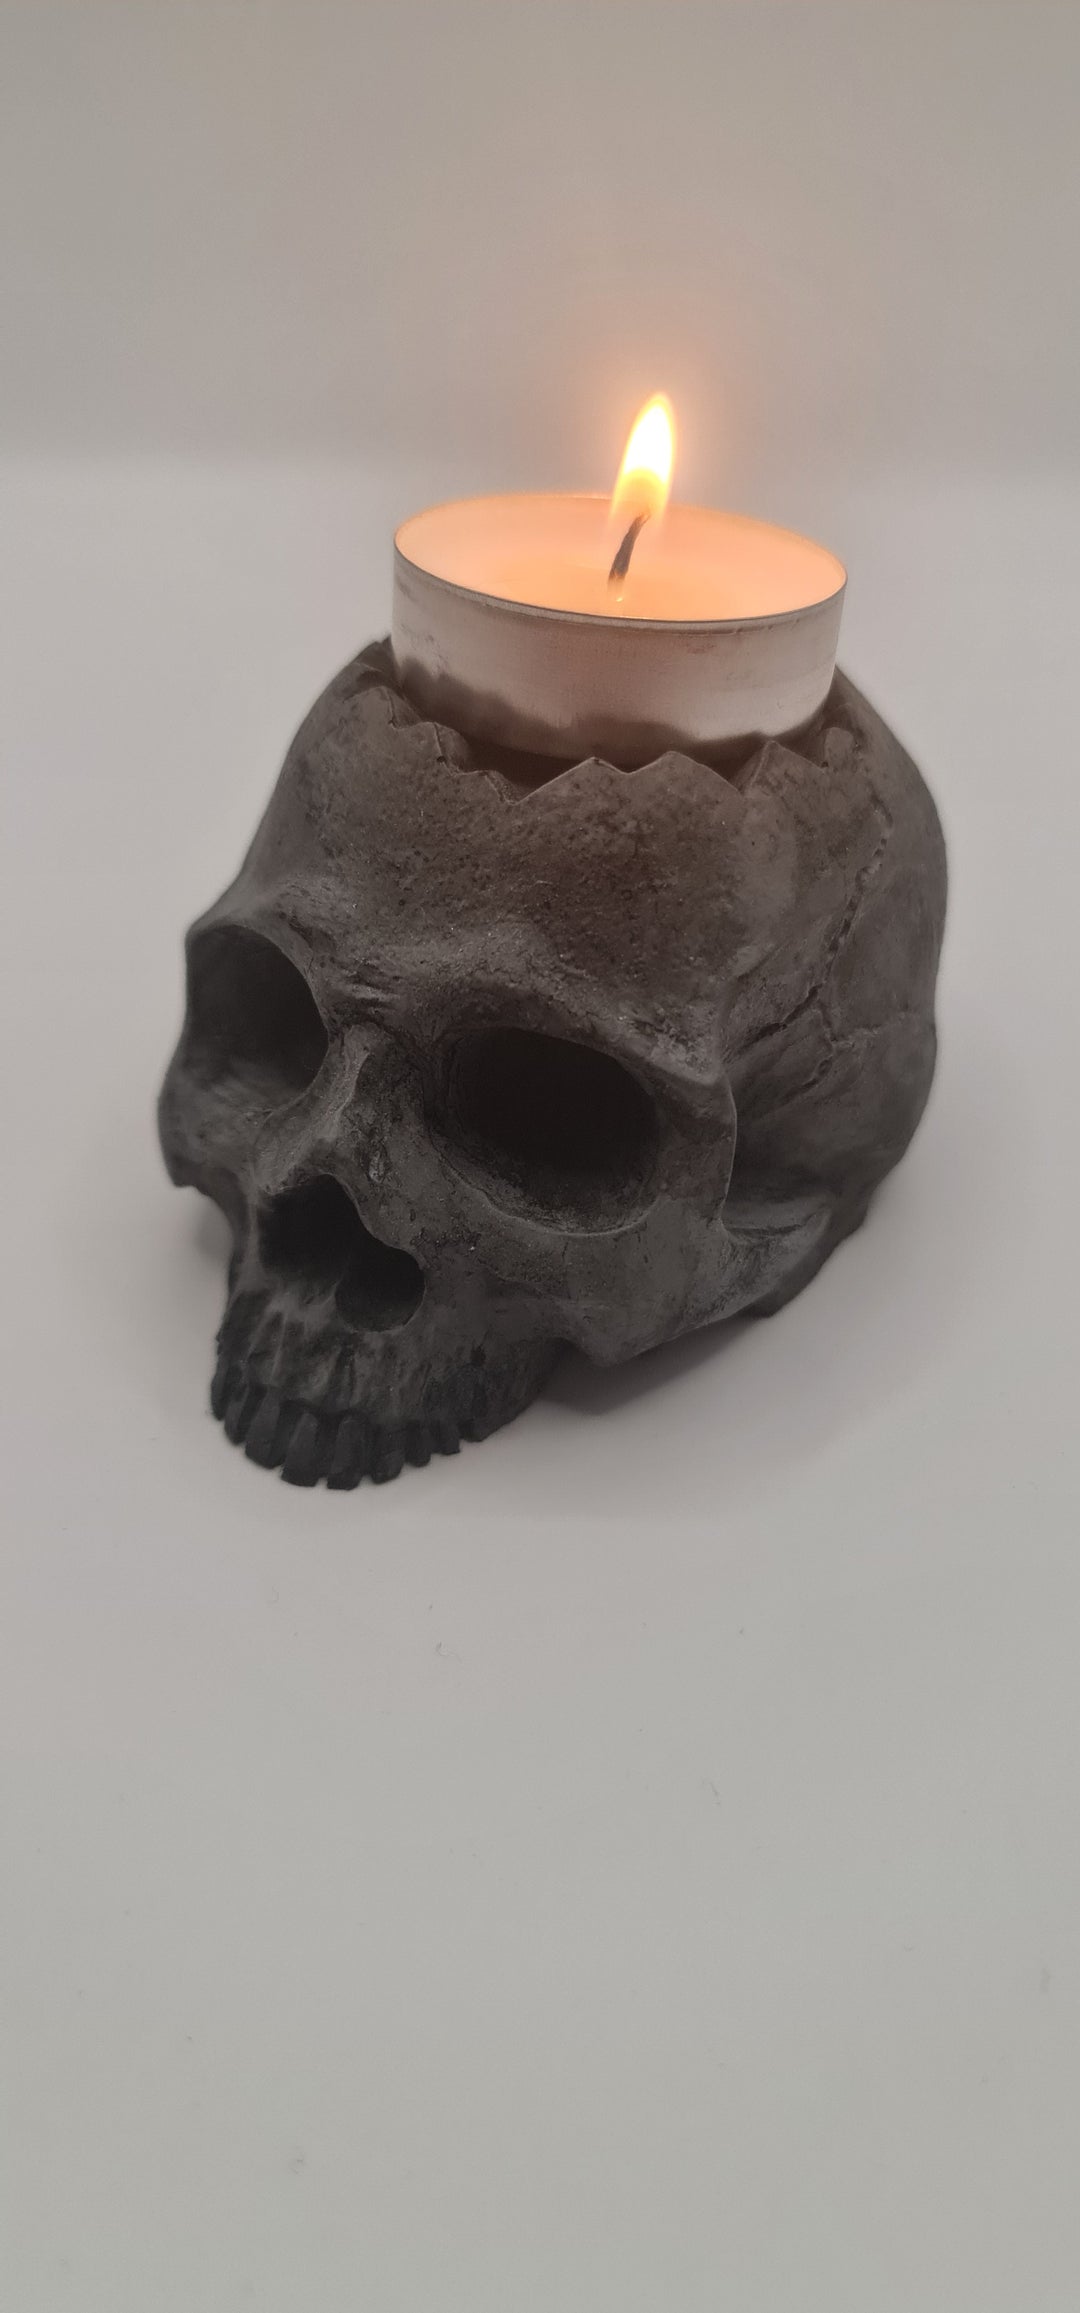 Skull Tea Light Holder